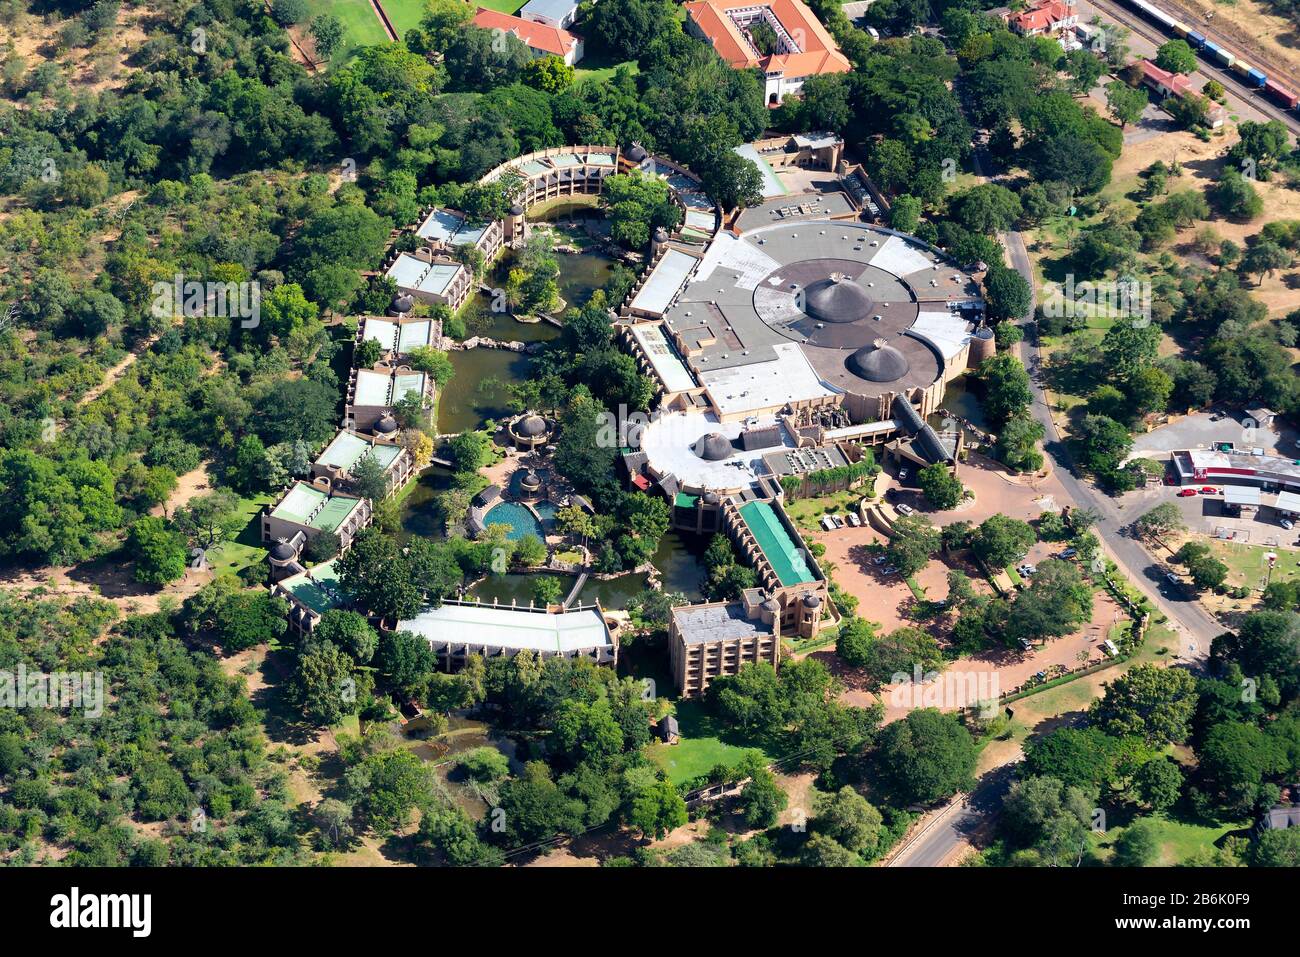 Vue aérienne Du Kingdom Hotel situé à Victoria Falls en Afrique. Choix d'hébergement populaire pour les touristes visitant le Zimbabwe. Banque D'Images